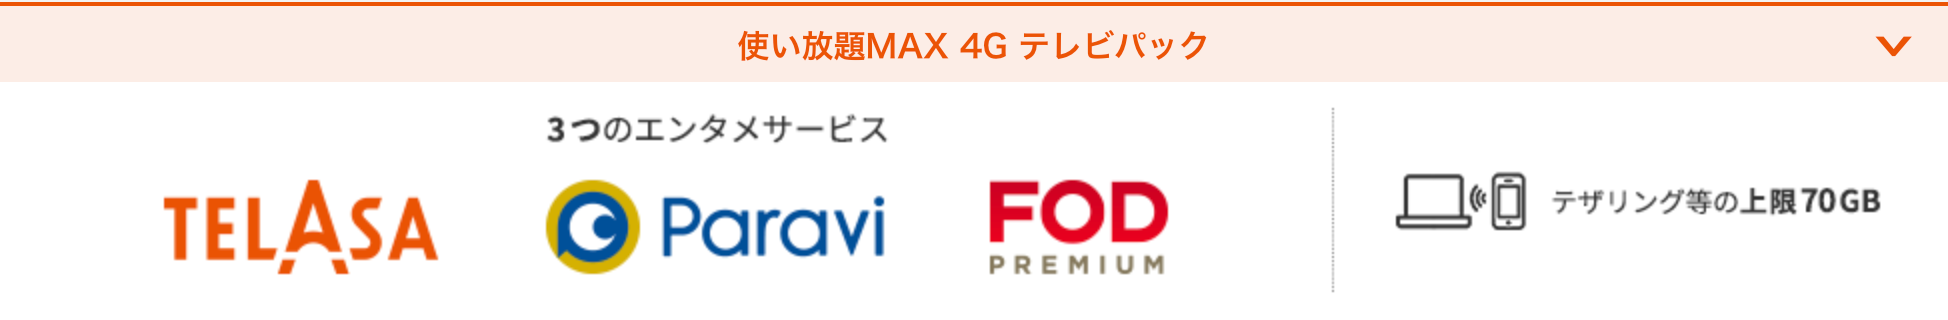 使い放題MAX 4G テレビパック